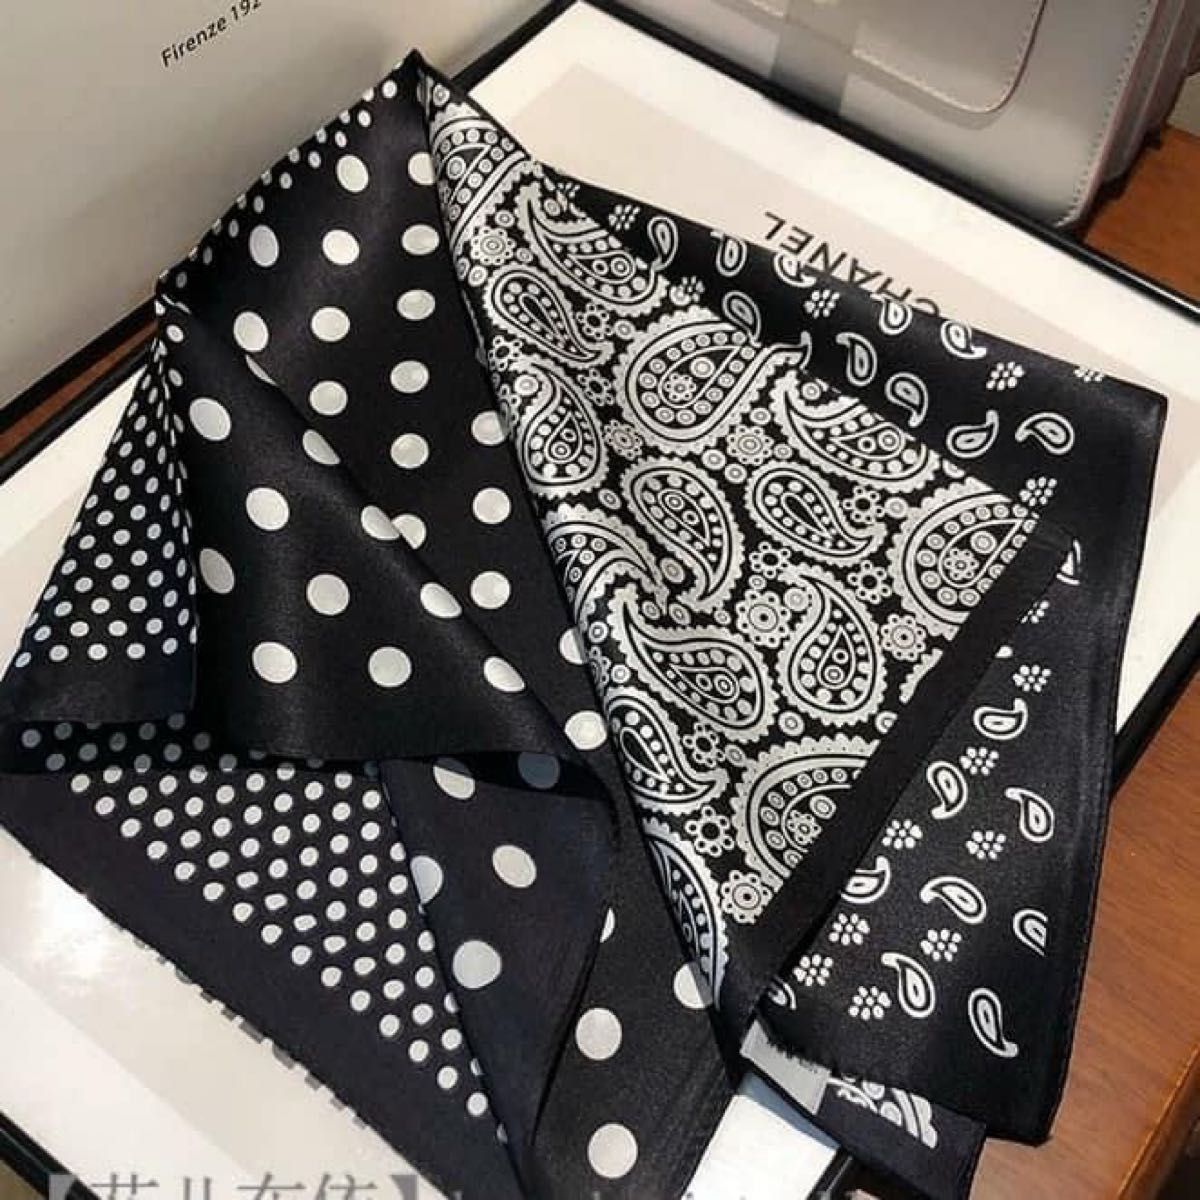 【新品】シルクスカーフ 白黒 ペイズリードット柄プリント 小さめスカーフ正方形 おしゃれ 男女兼用